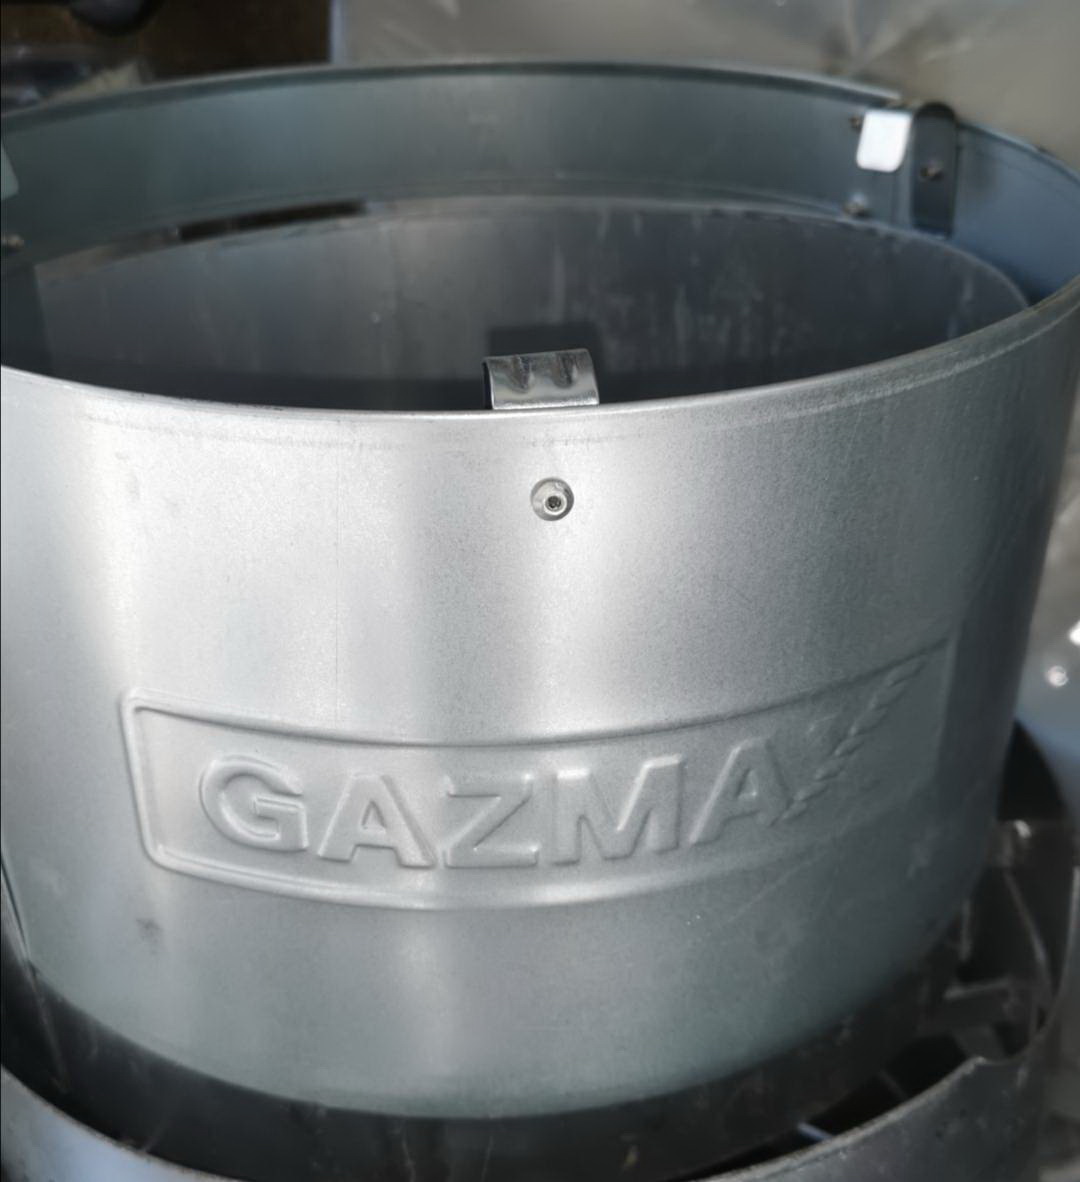 บังลมแก็ส ชนิดเหล็ก GAZMAX บังลมแก็ส อุปกรณ์ที่ช่วยกันลมแก็ส ช่วยประหยัดแก็ส